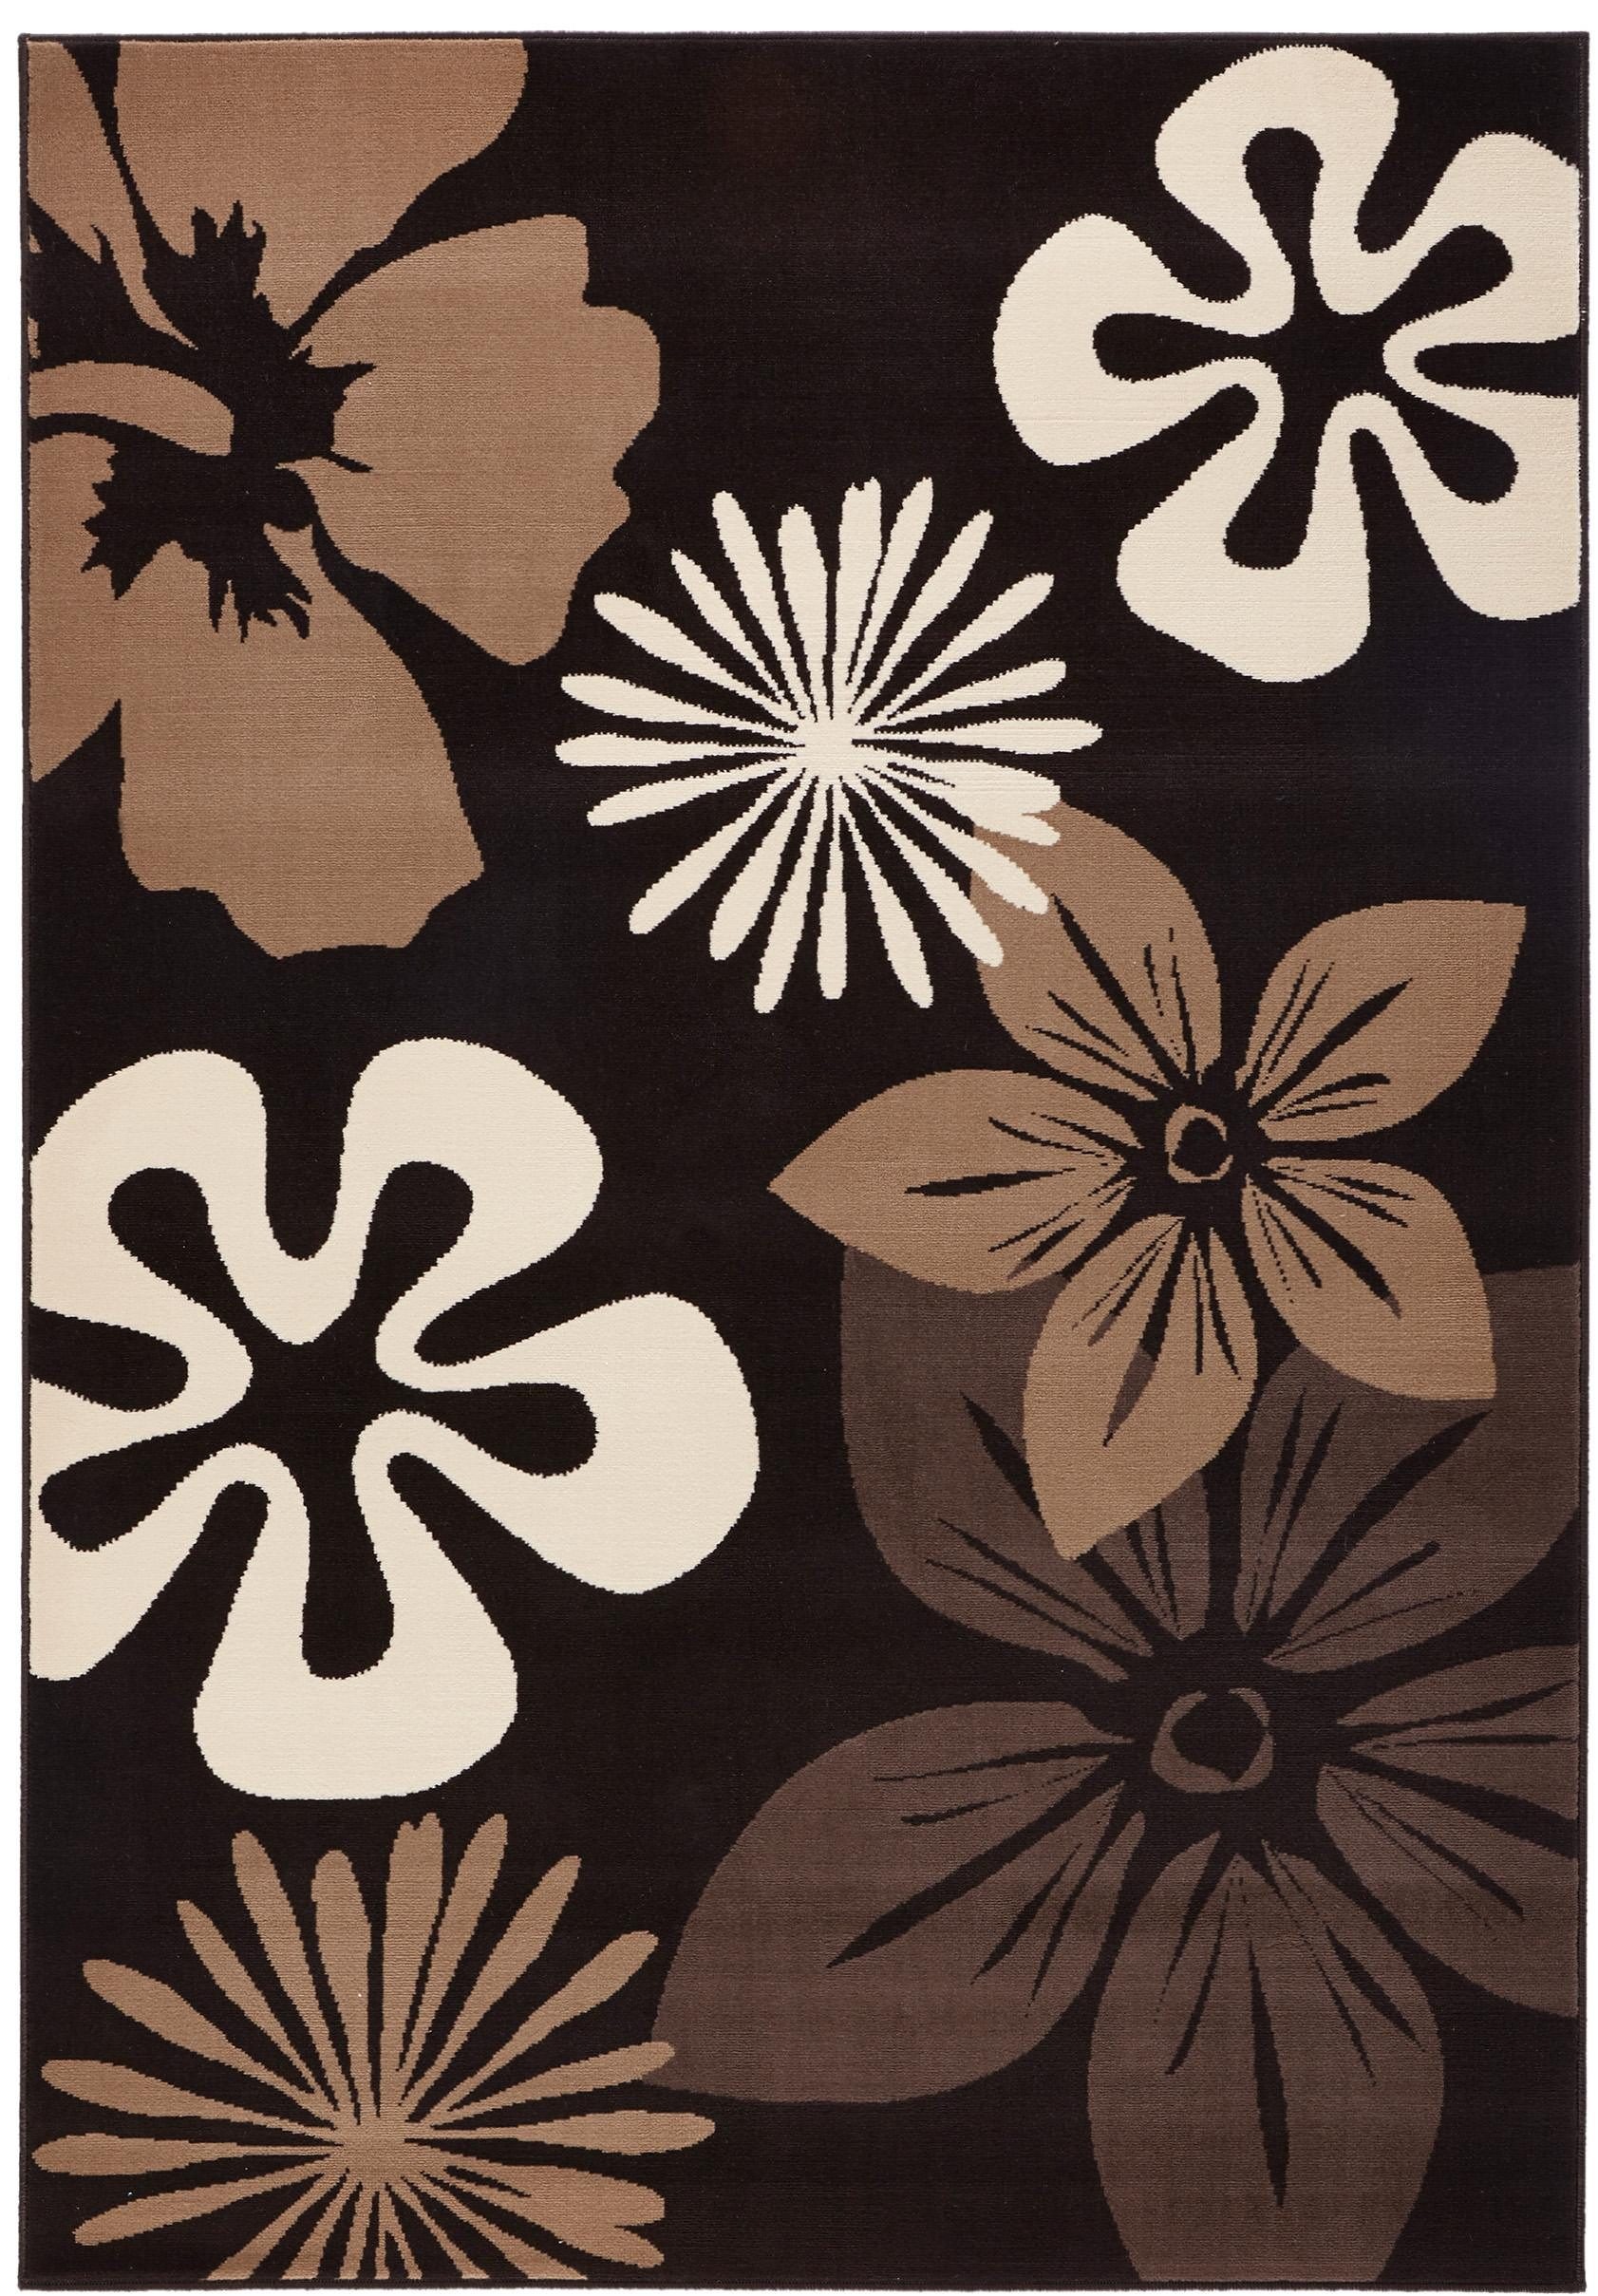 HANSE Home Teppich »Flora«, rechteckig, Kurzflor, Blumen Design, Kräftige Farben, ringsum gekettelt, Robust